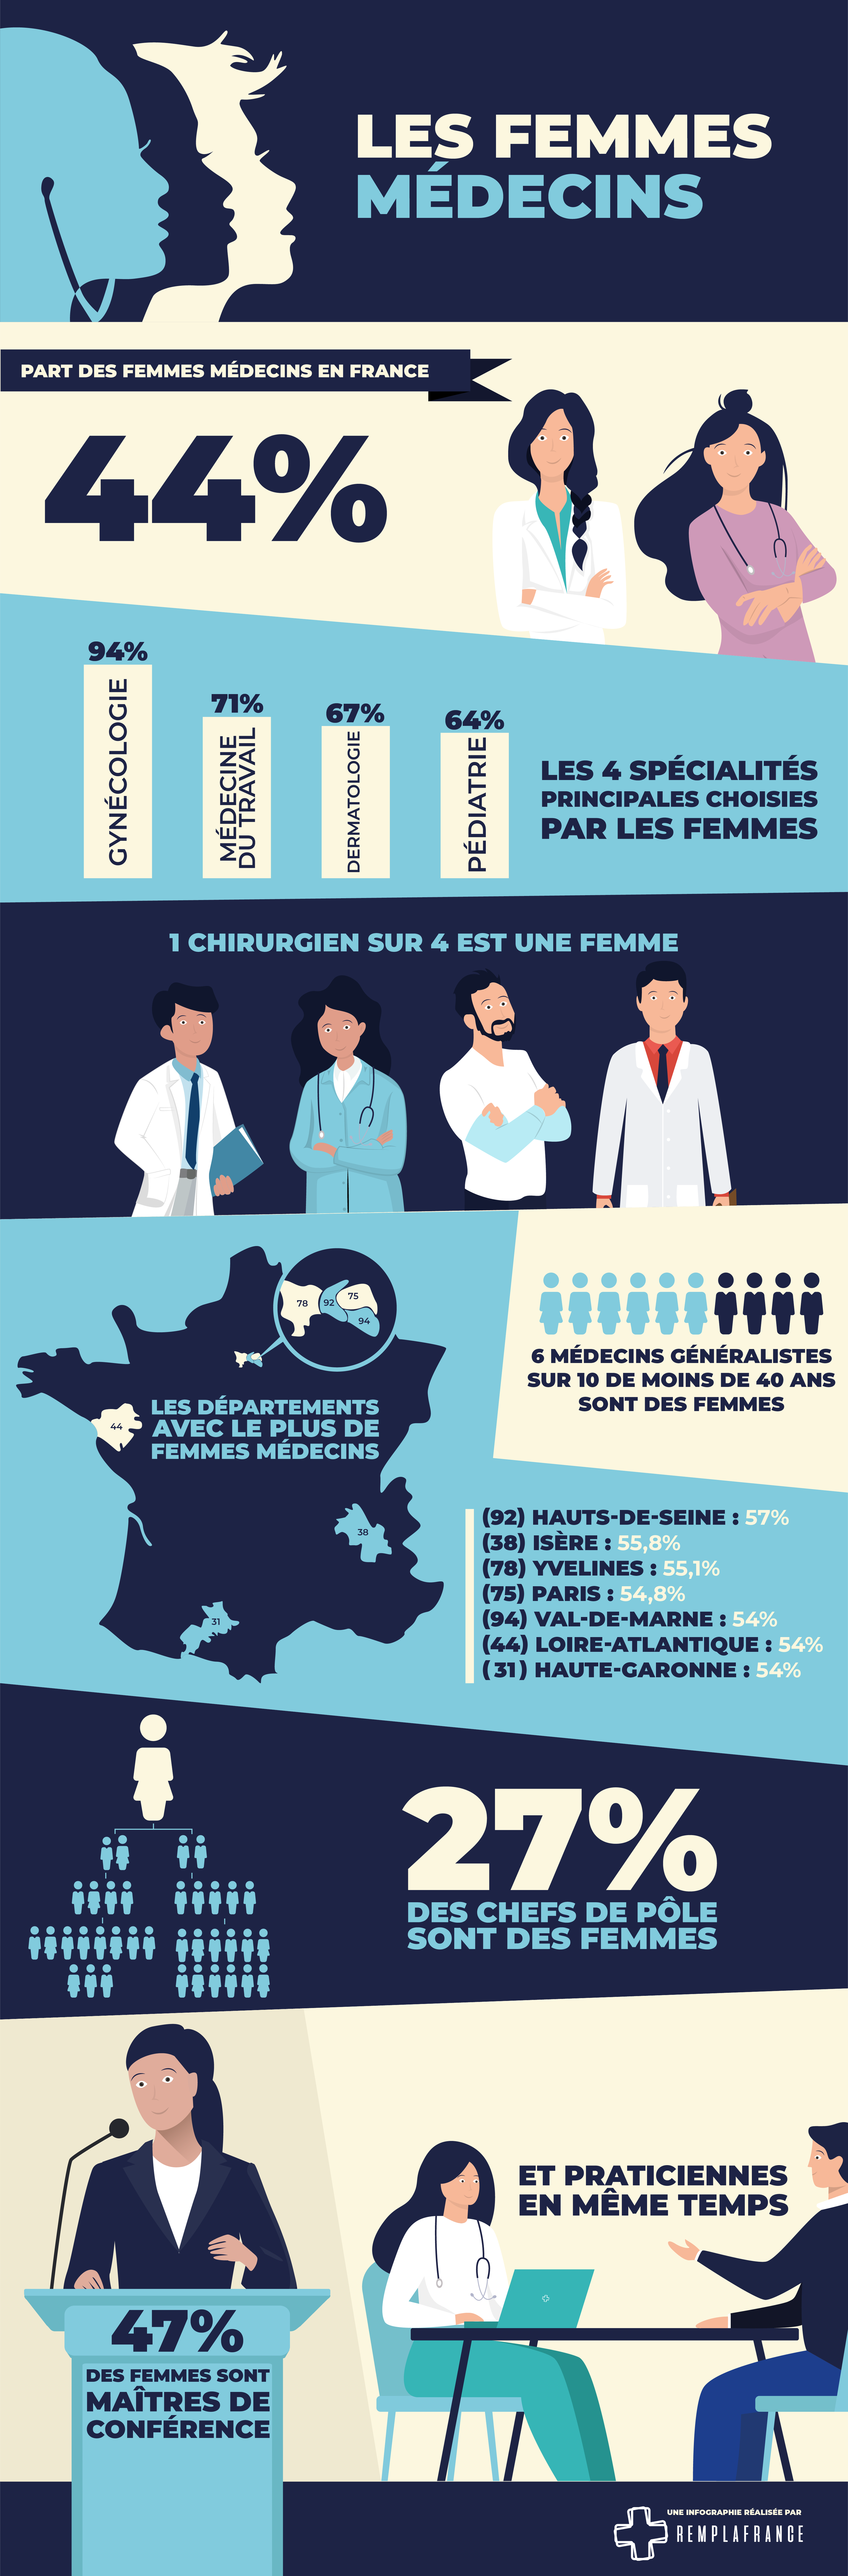 La place des femmes medecins en France